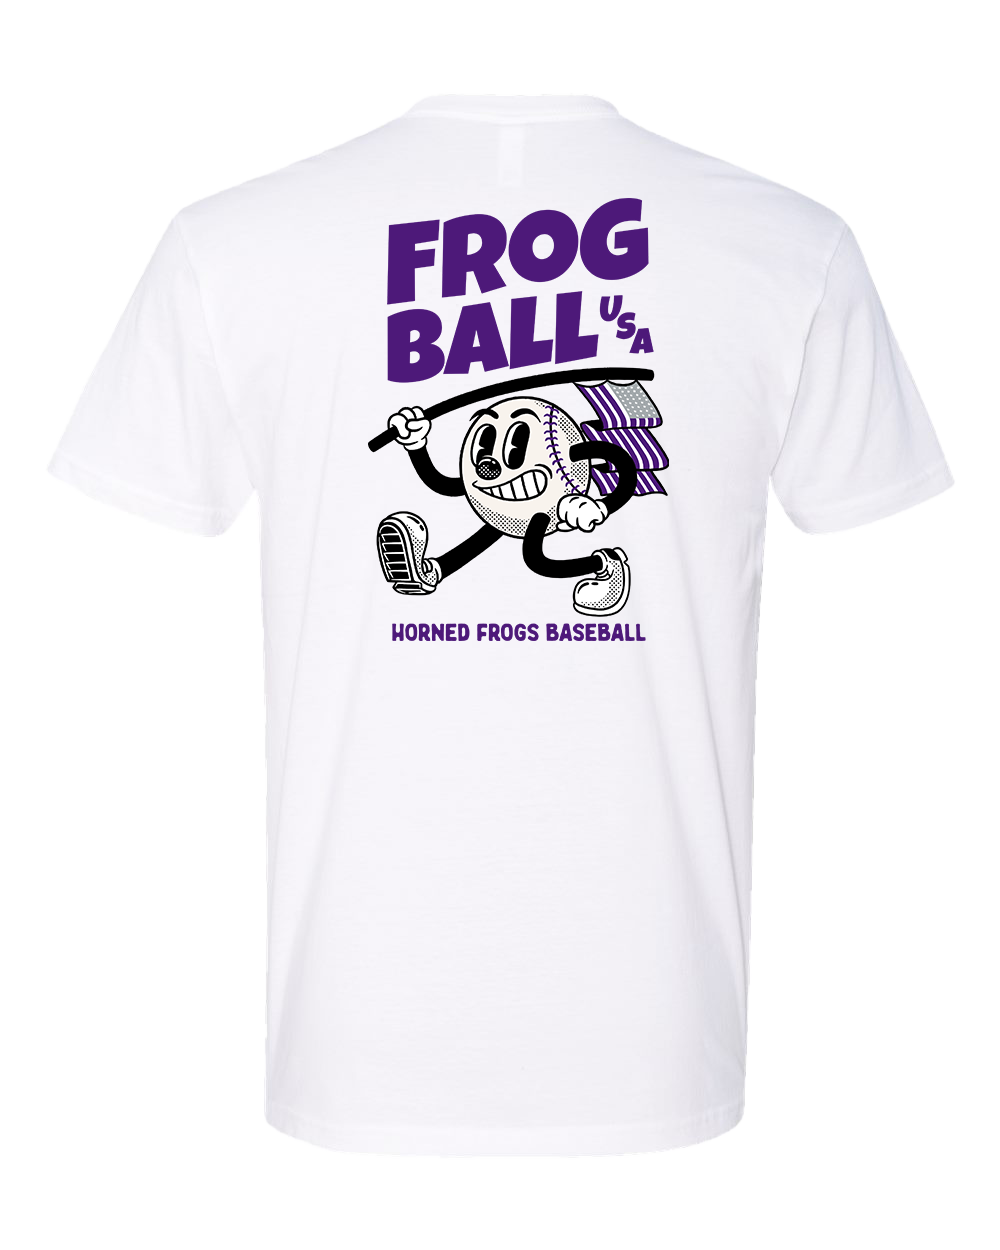 Frogball, USA Tee